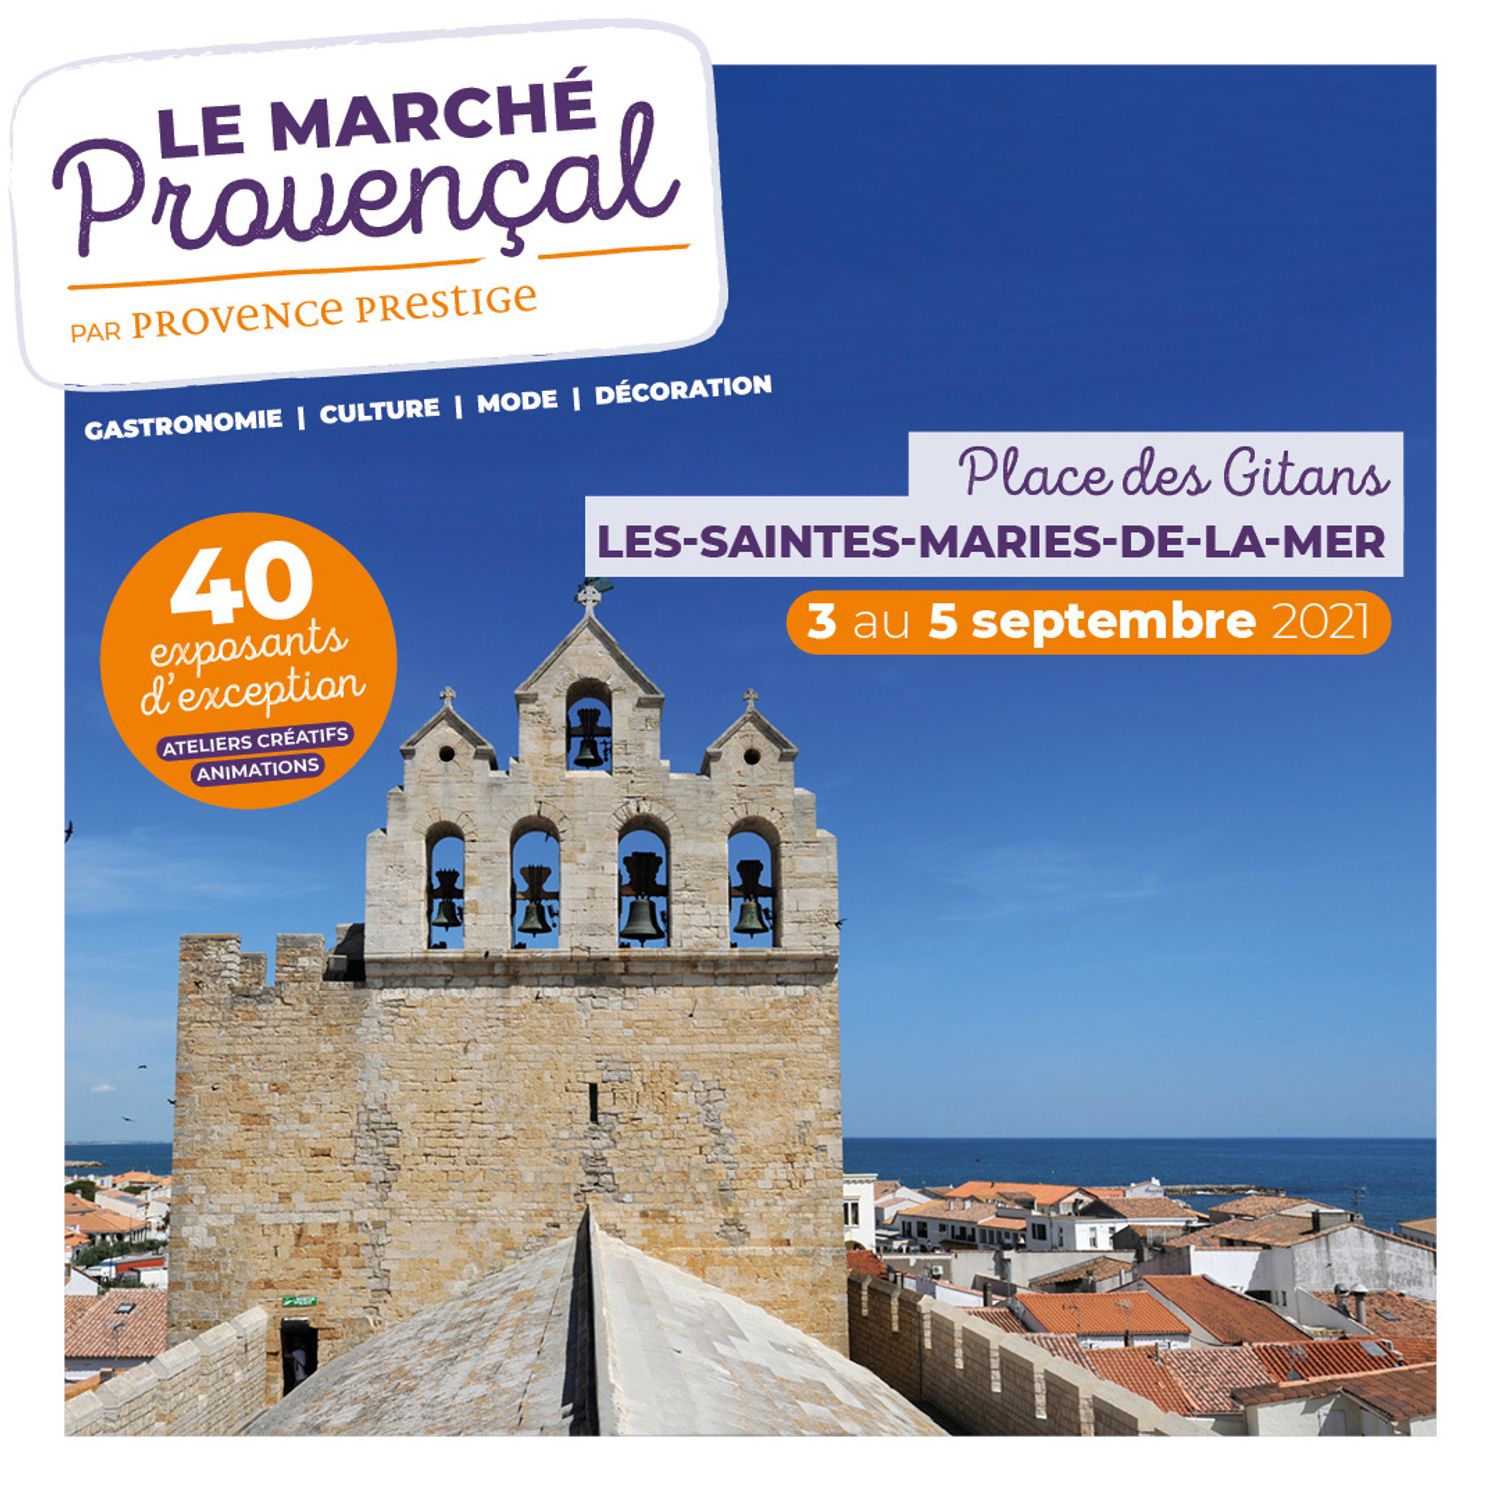 [ CULTURE/LOISIR ] Saintes-Maries de la Mer: Le Marché Provençal s'installe sur la Place des Gitans